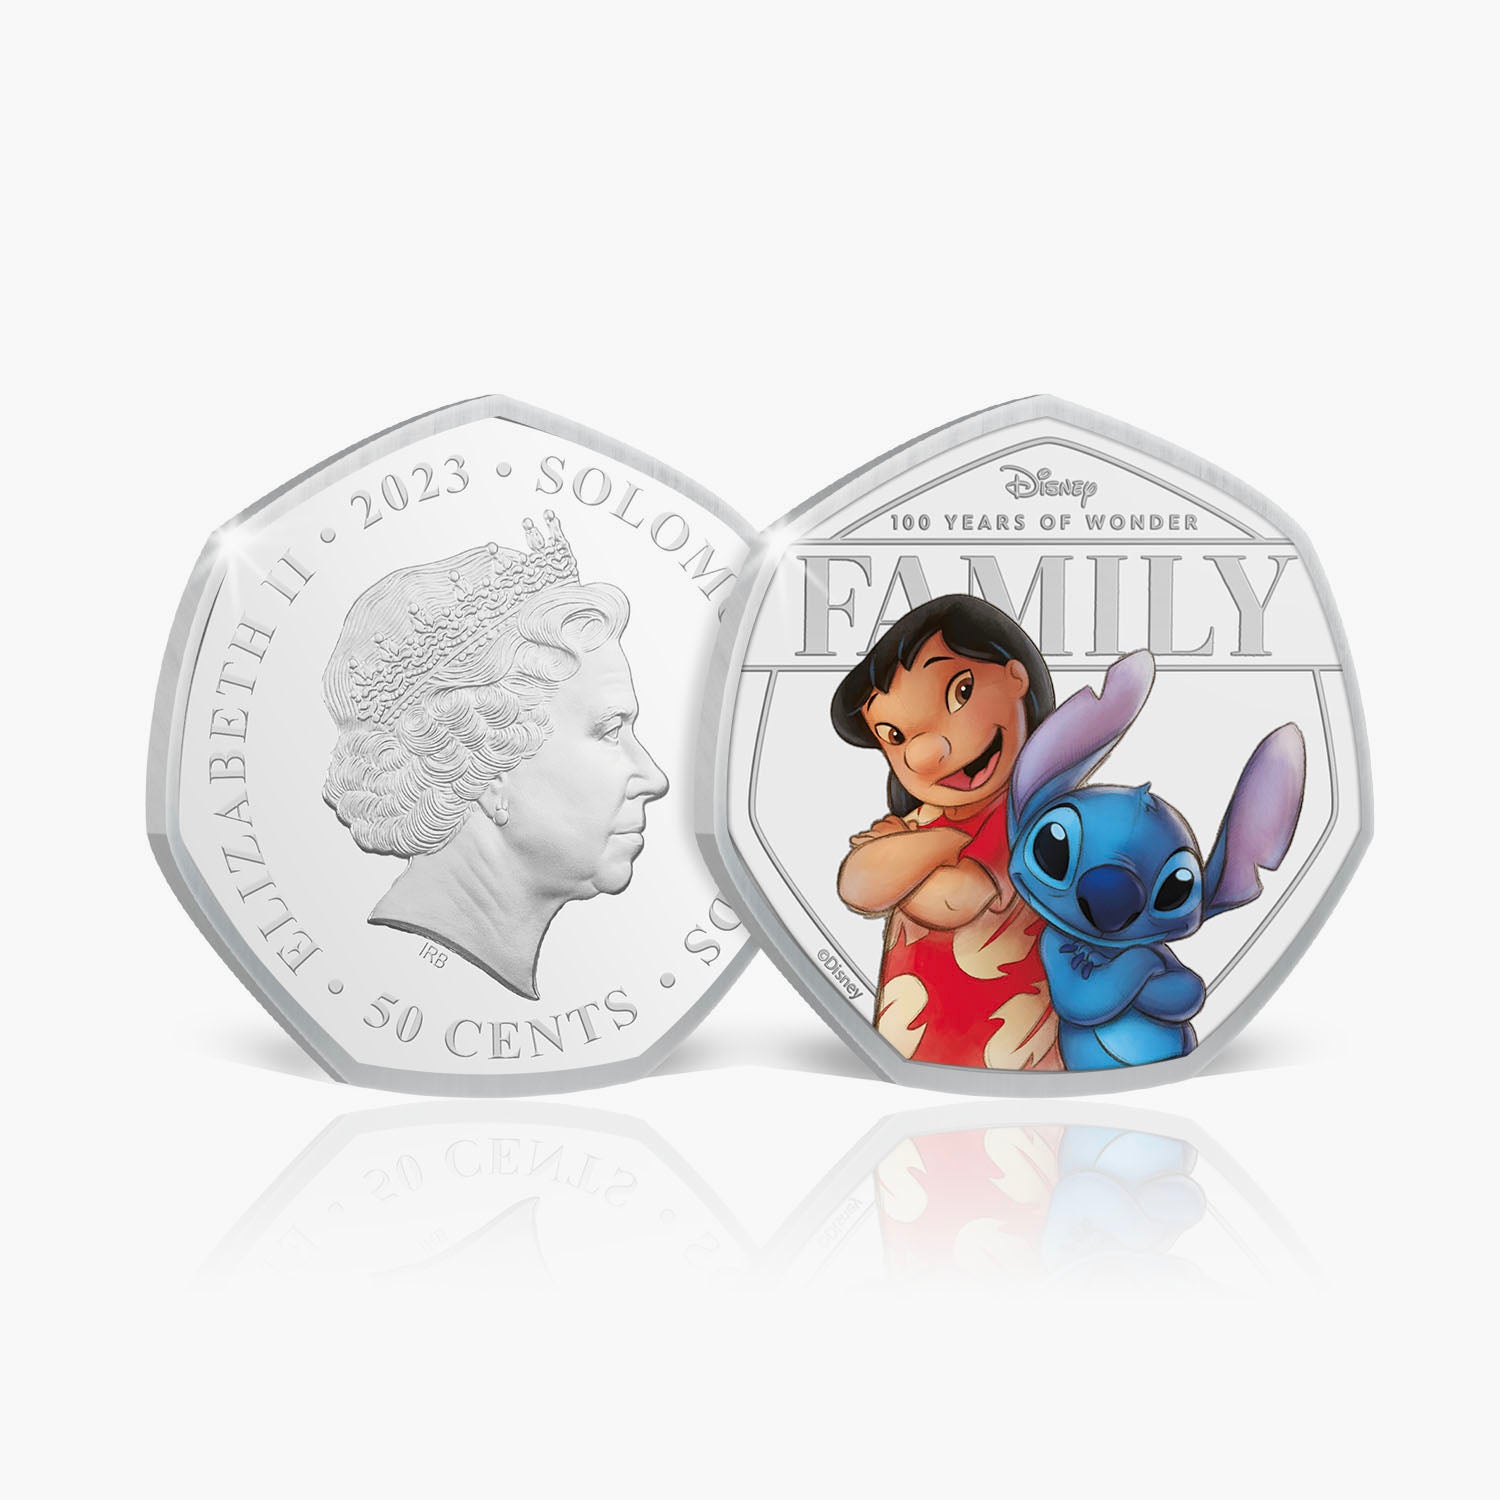 The 100th Anniversary of Disney 2023 Lilo & Stitch Coin